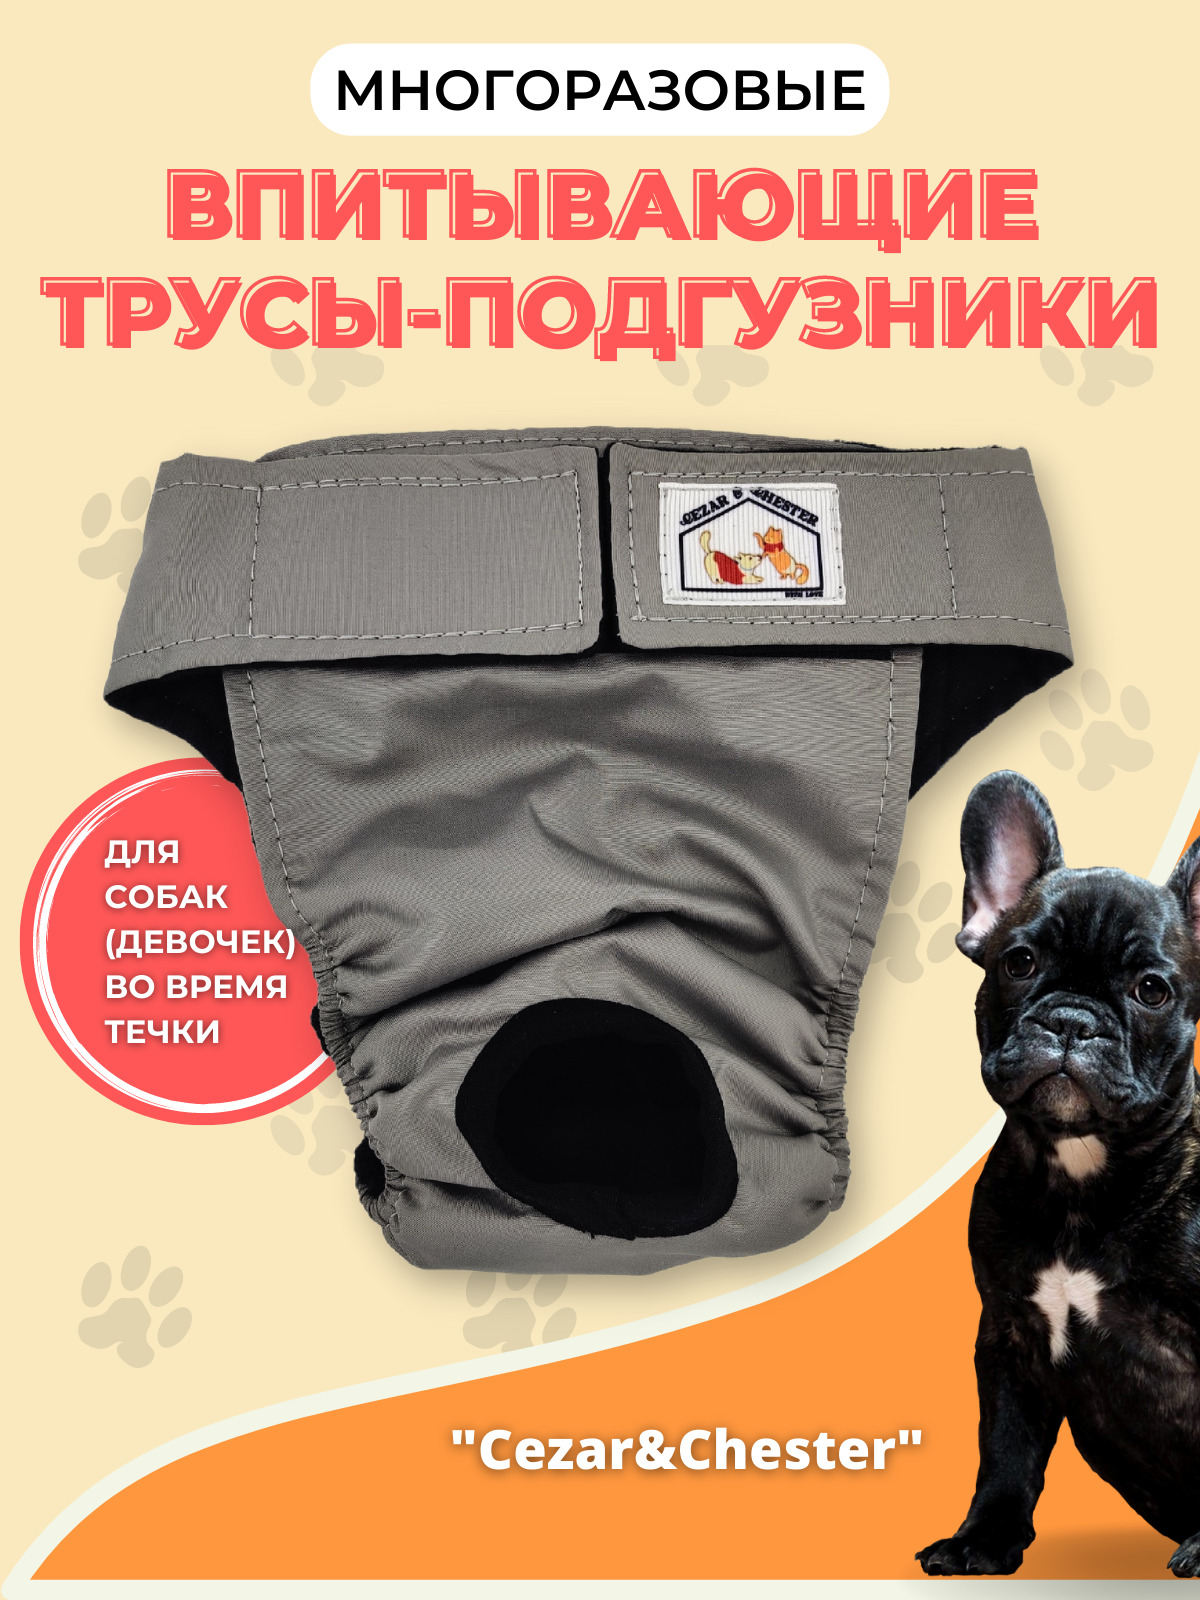 Многоразовые впитывающие непромокаемые трусы для собак памперс подгузник при  течке или недержании - купить с доставкой по выгодным ценам в  интернет-магазине OZON (231618908)